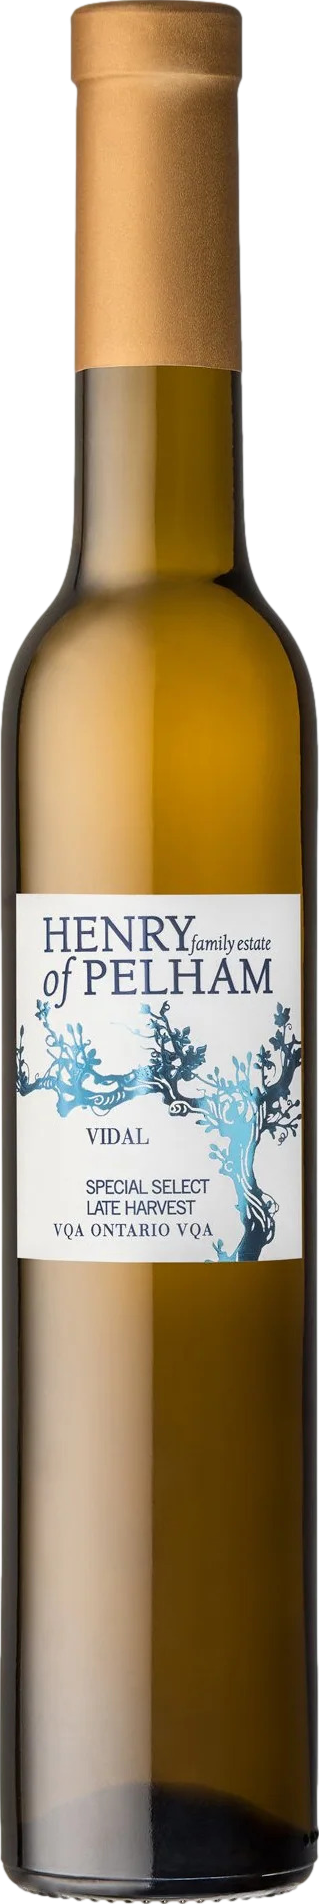 SPECIAL günstig Kaufen-Henry of Pelham Special Select Late Harvest Vidal 2019. Henry of Pelham Special Select Late Harvest Vidal 2019 . 